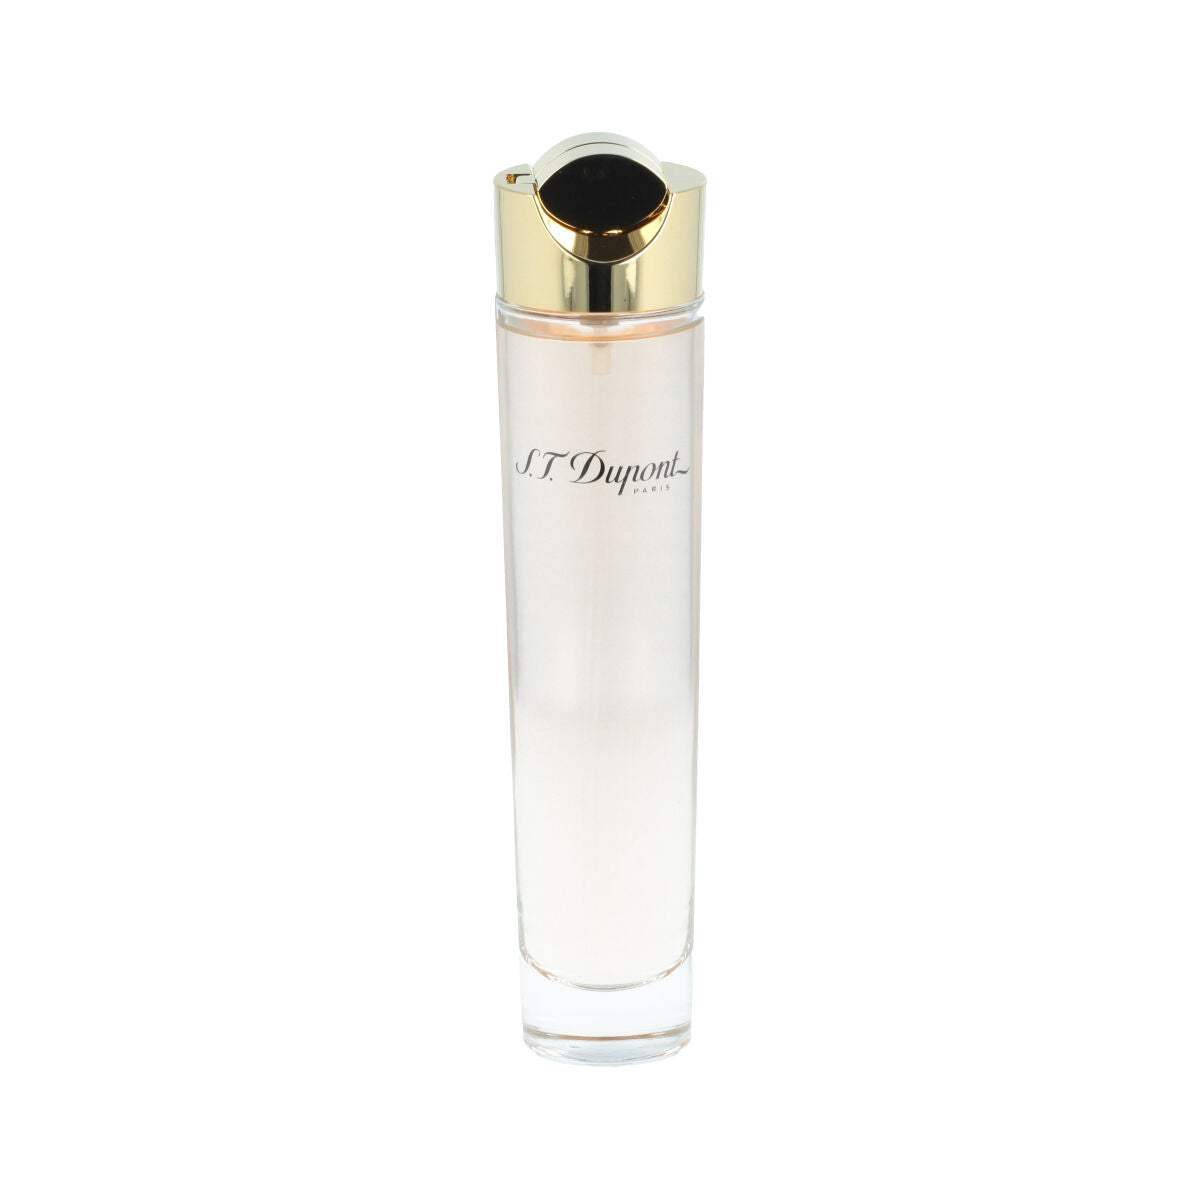 Parfum Femme S.T. Dupont   EDP Pour Femme (100 ml)